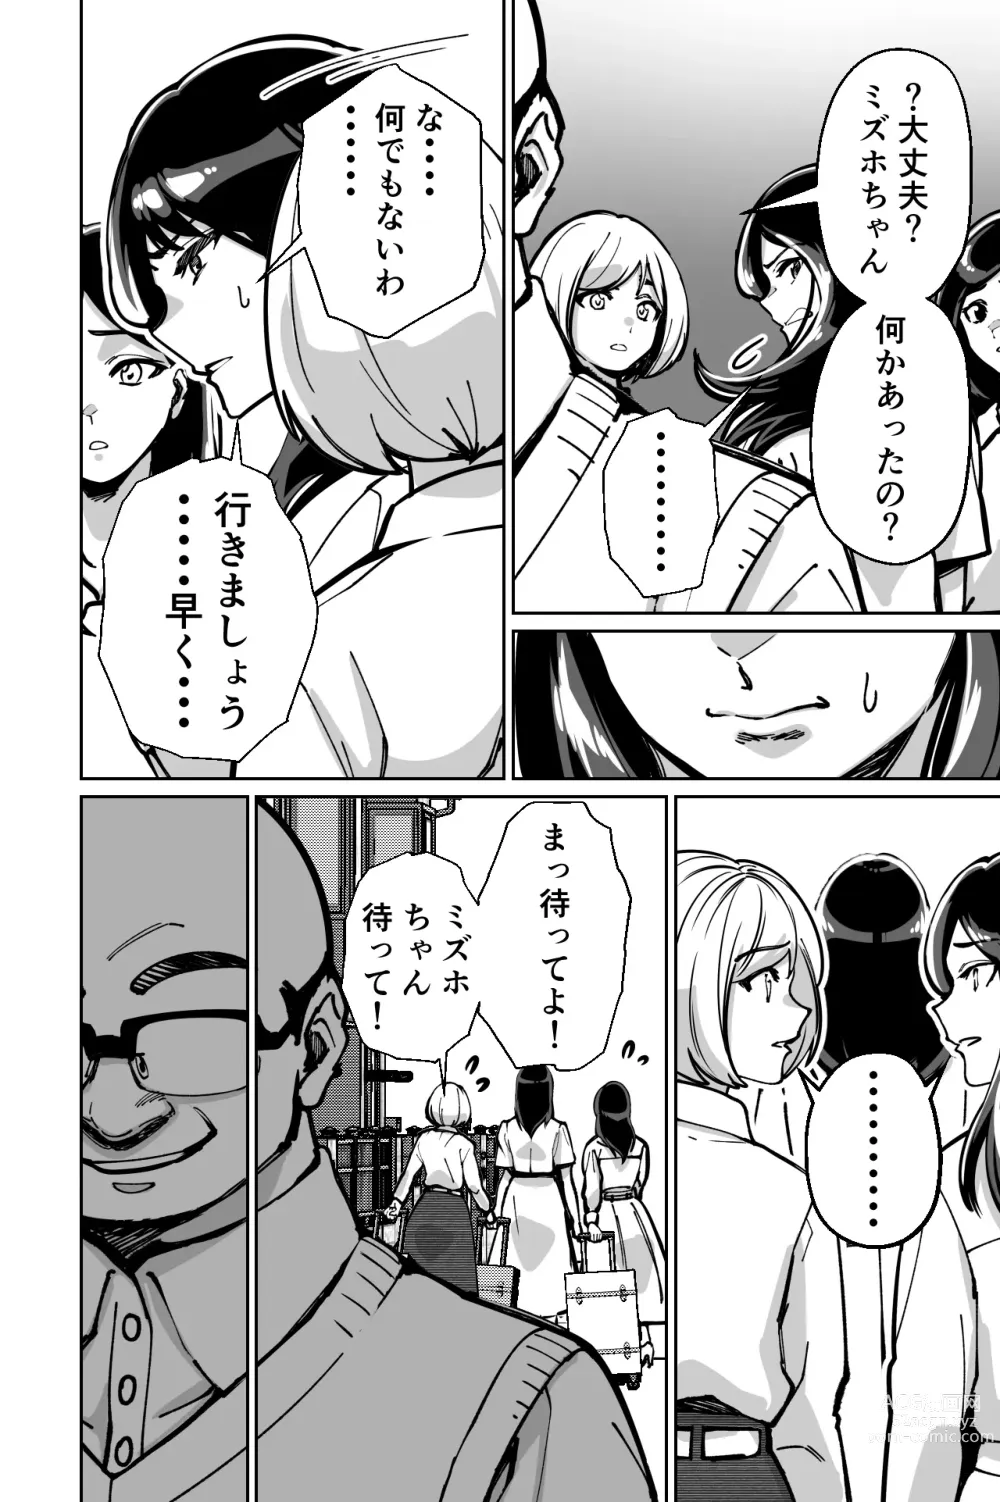 Page 134 of doujinshi Minpaku ~Ojou-sama-tachi wa Minpaku Keieisha no Wana ni Ochiru~